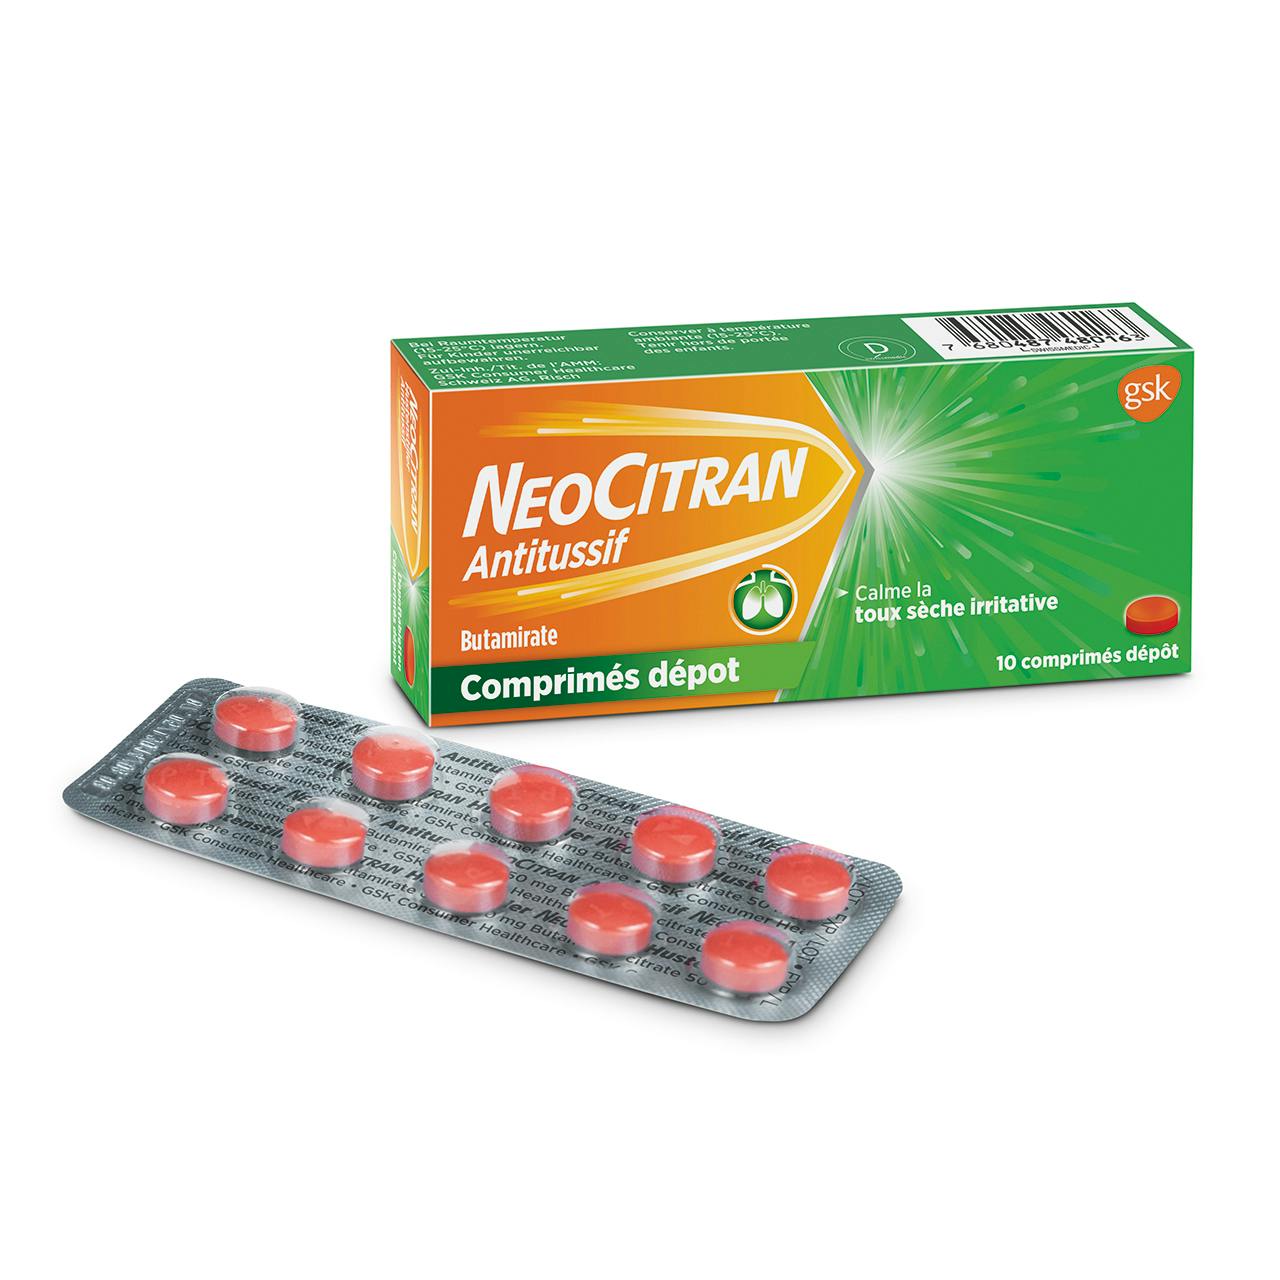 NeoCitran Antitussif comprimés-dépôt